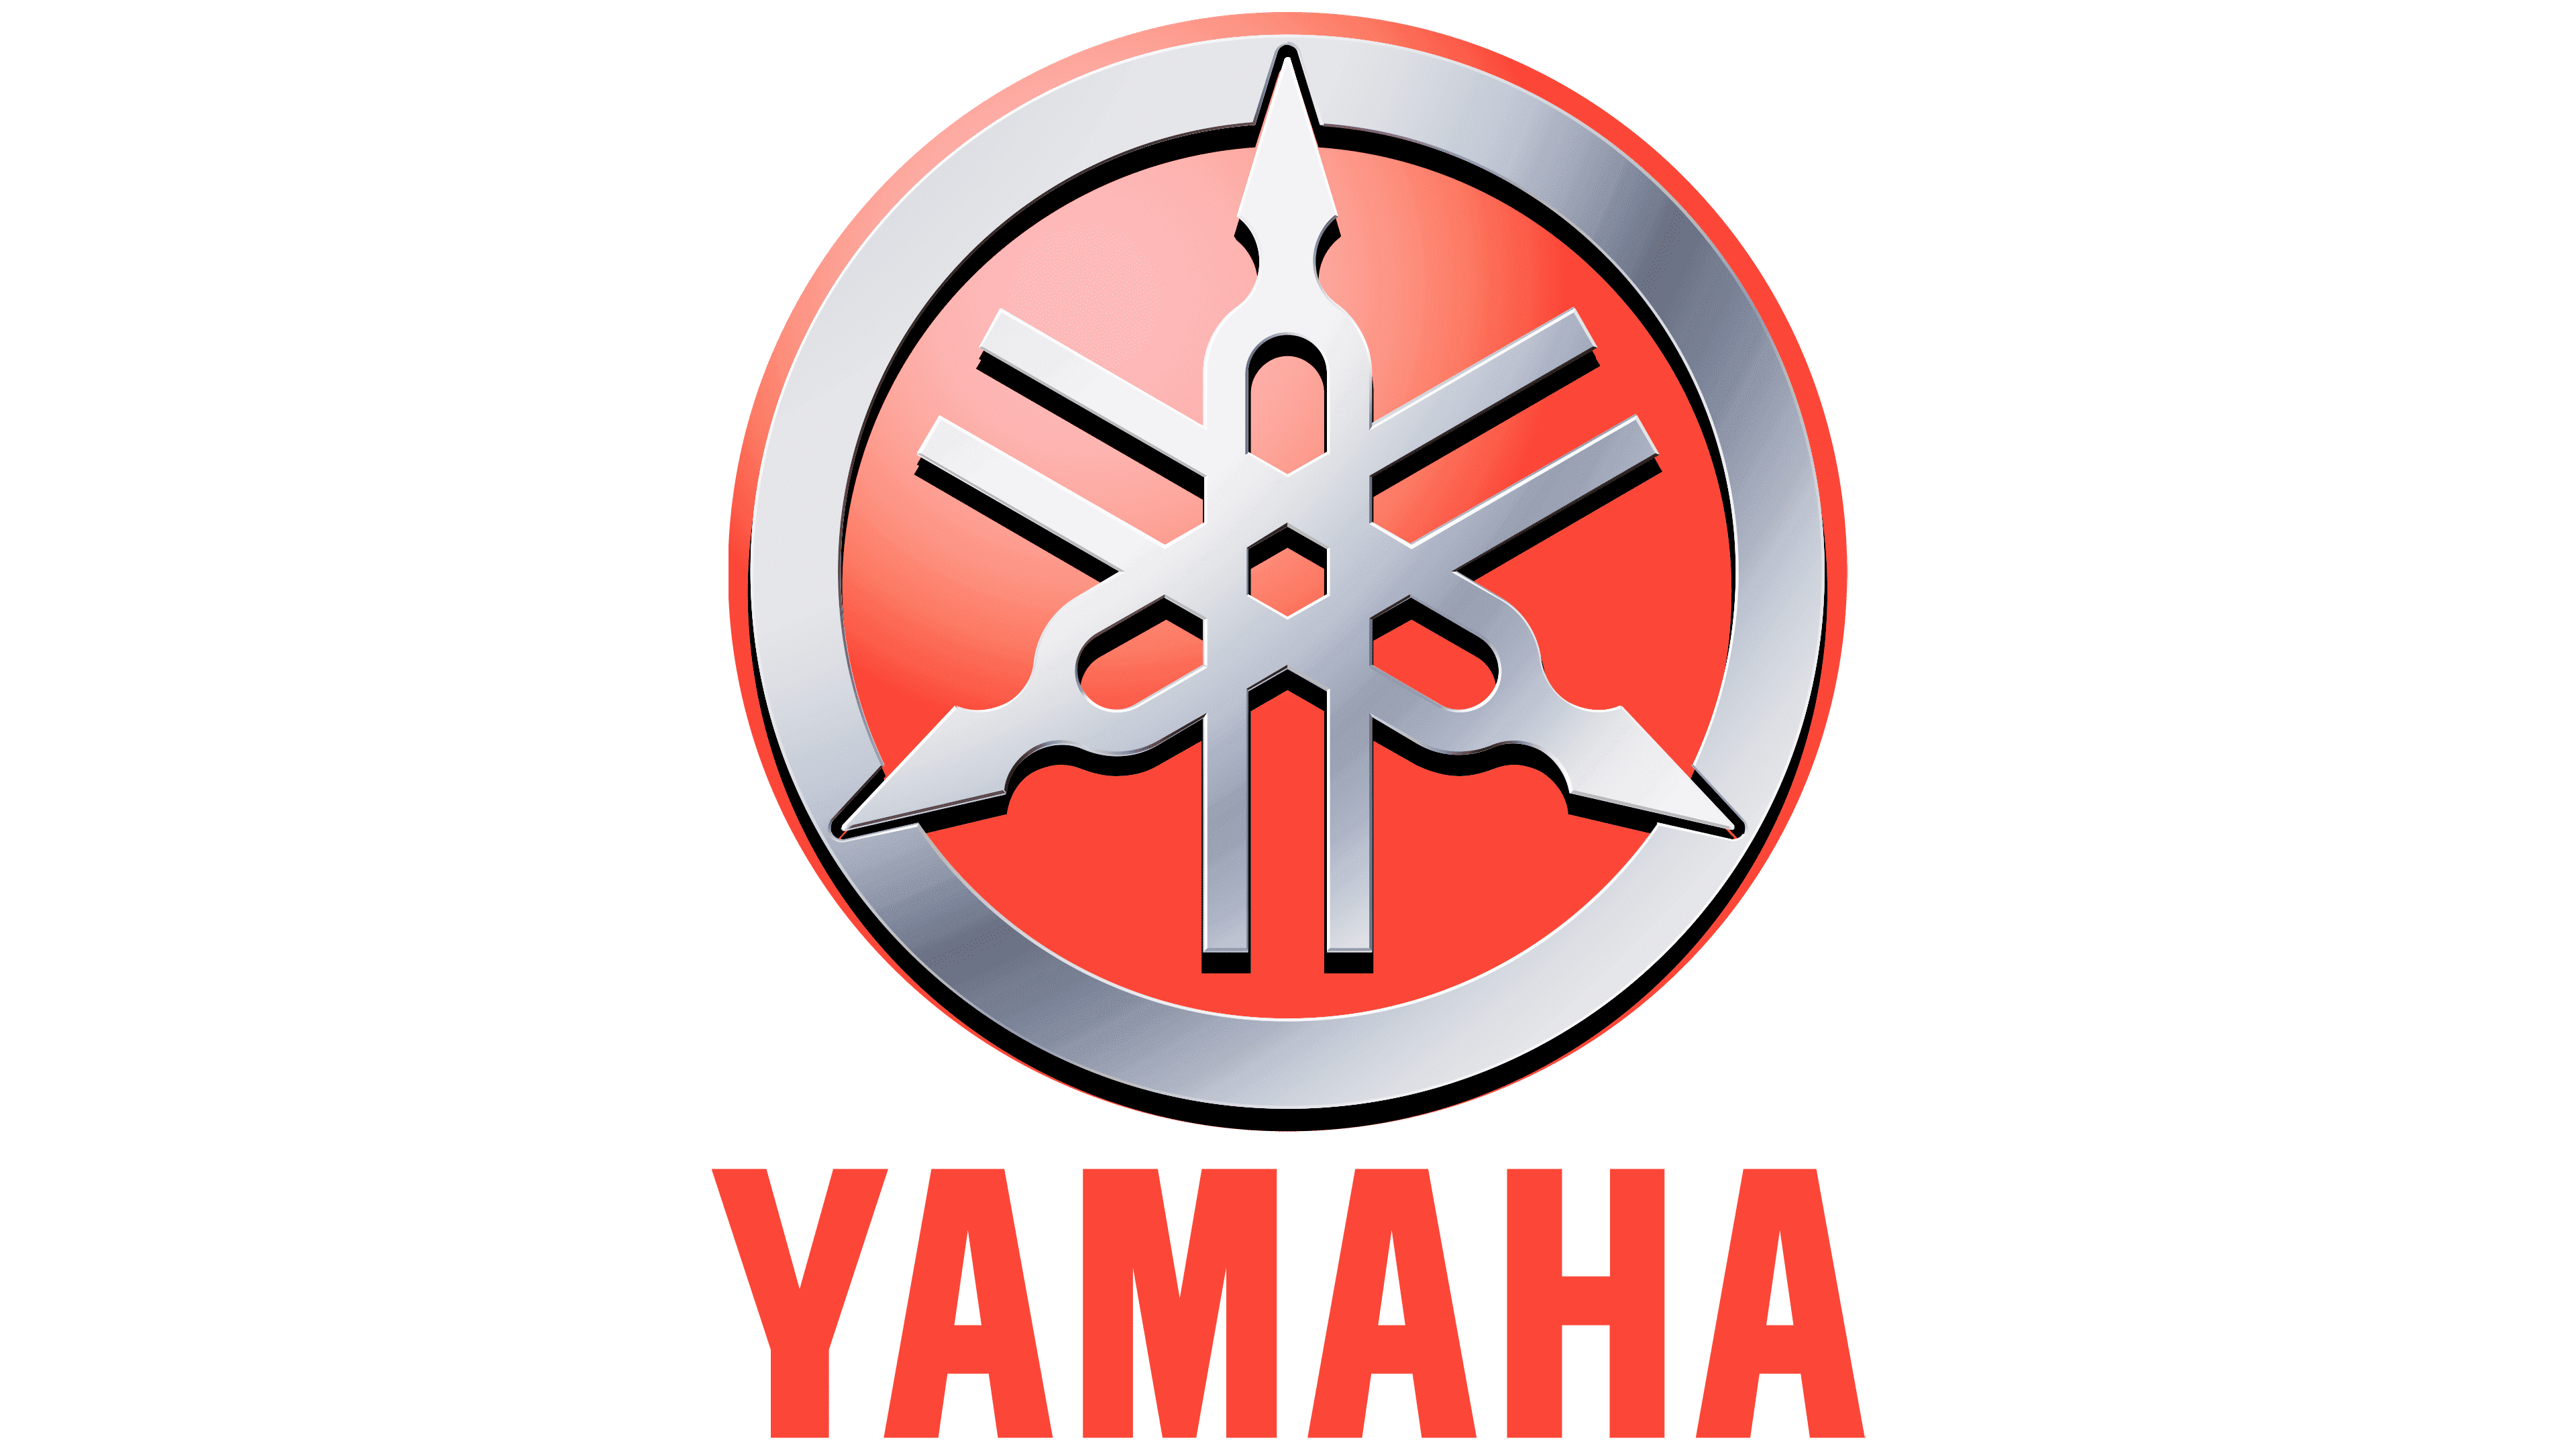 Logo De Yamaha La Historia Y El Significado Del Logotipo La Marca Y ...